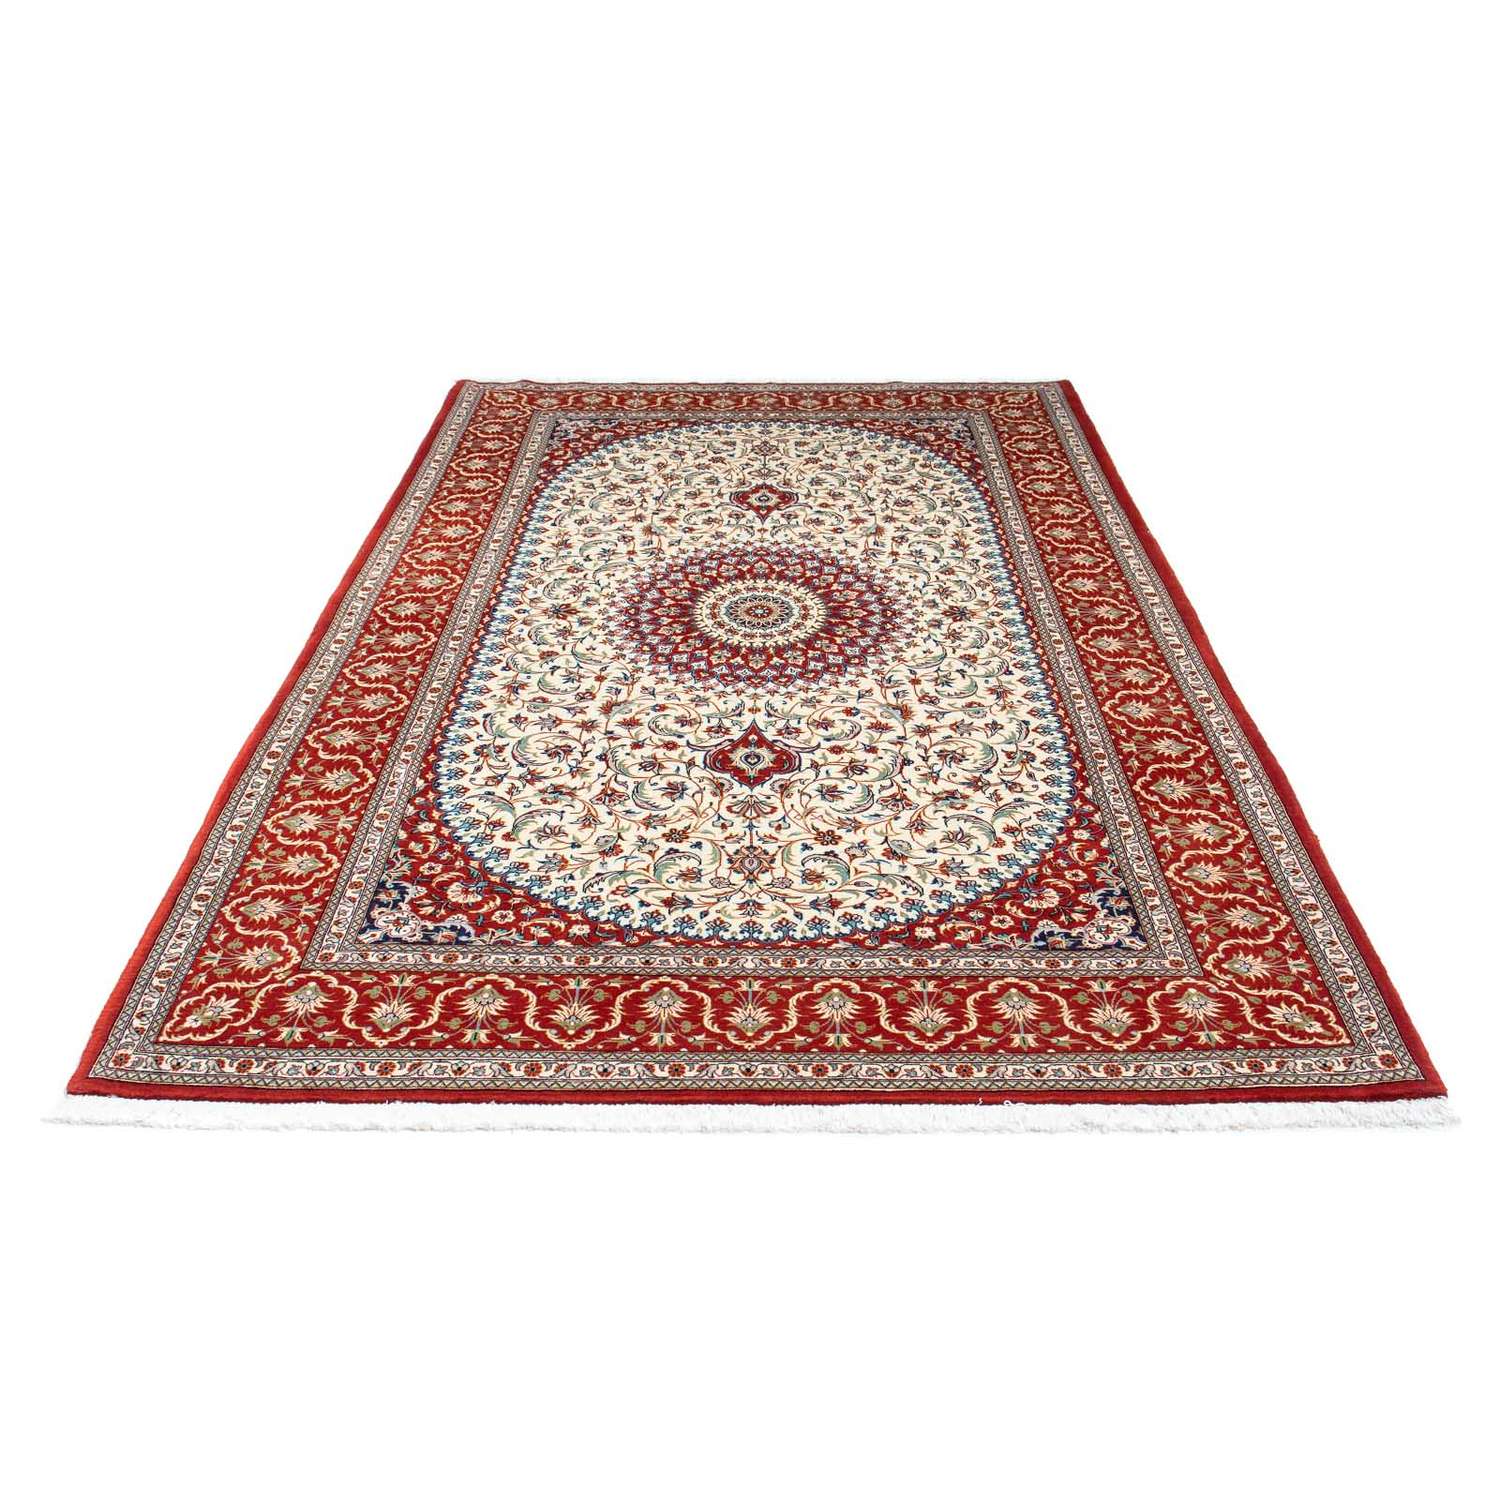 Perský koberec - Ghom - 261 x 156 cm - béžová